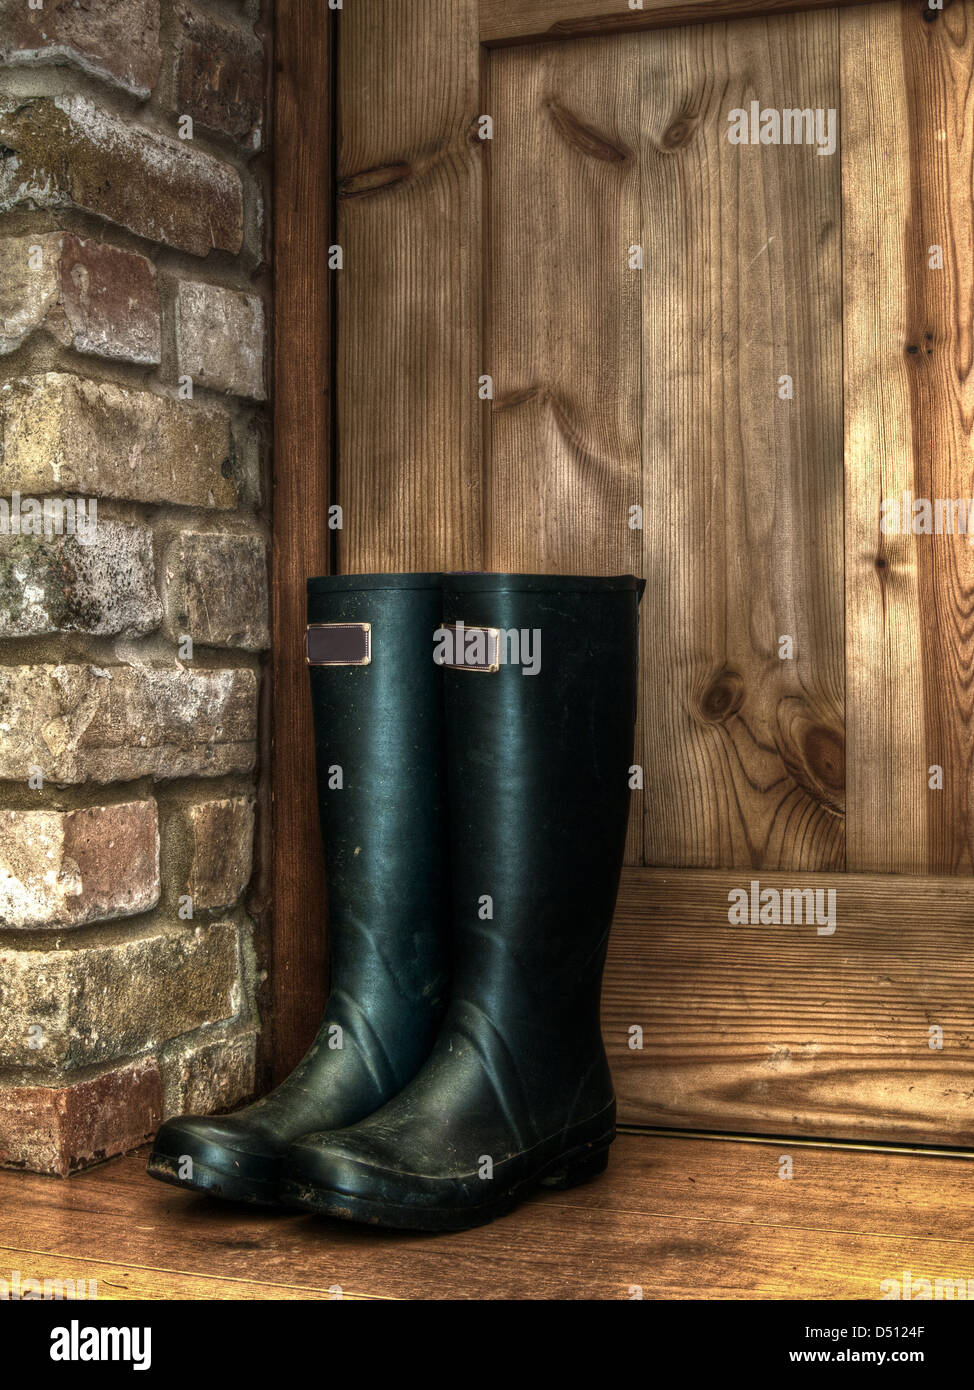 Pair muddy boots immagini e fotografie stock ad alta risoluzione - Alamy